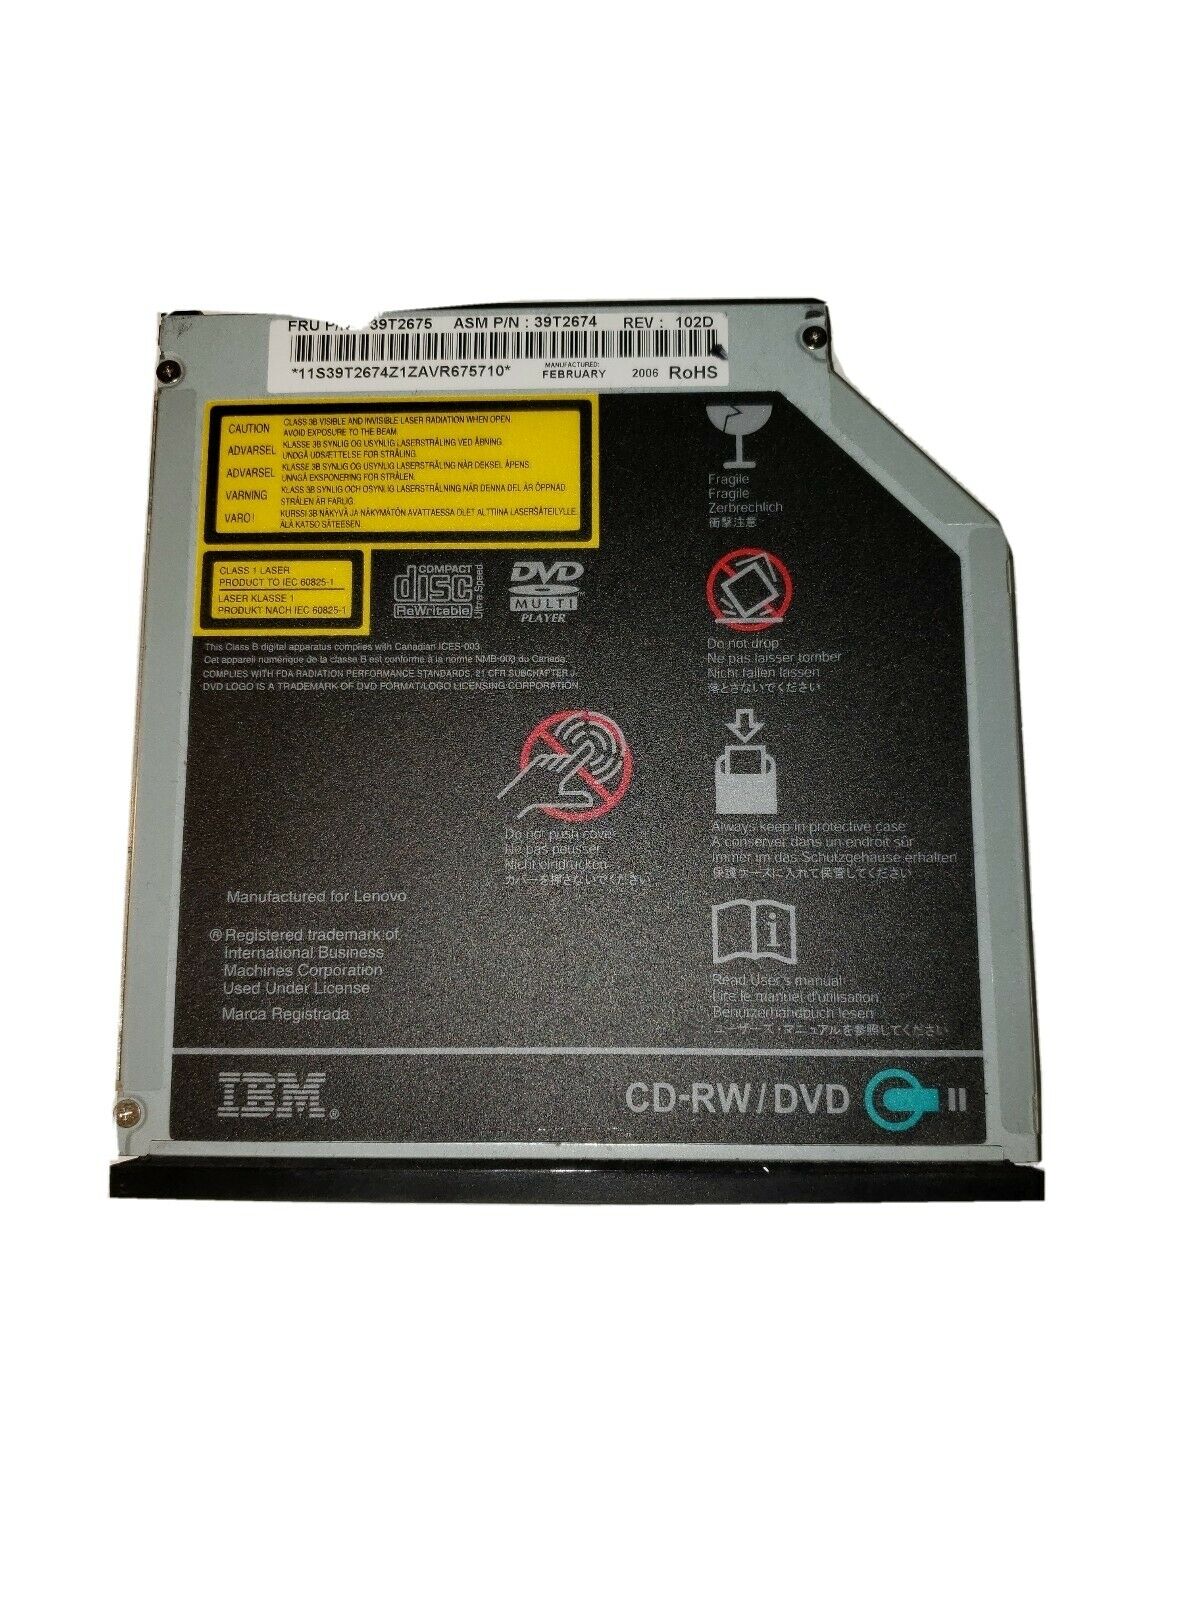 39T2675 | IBM 24X/10X/24X/8X UltraBay IDE Internal Slim-line CD-RW/DVD-ROM Combo II Drive for ThinkPad